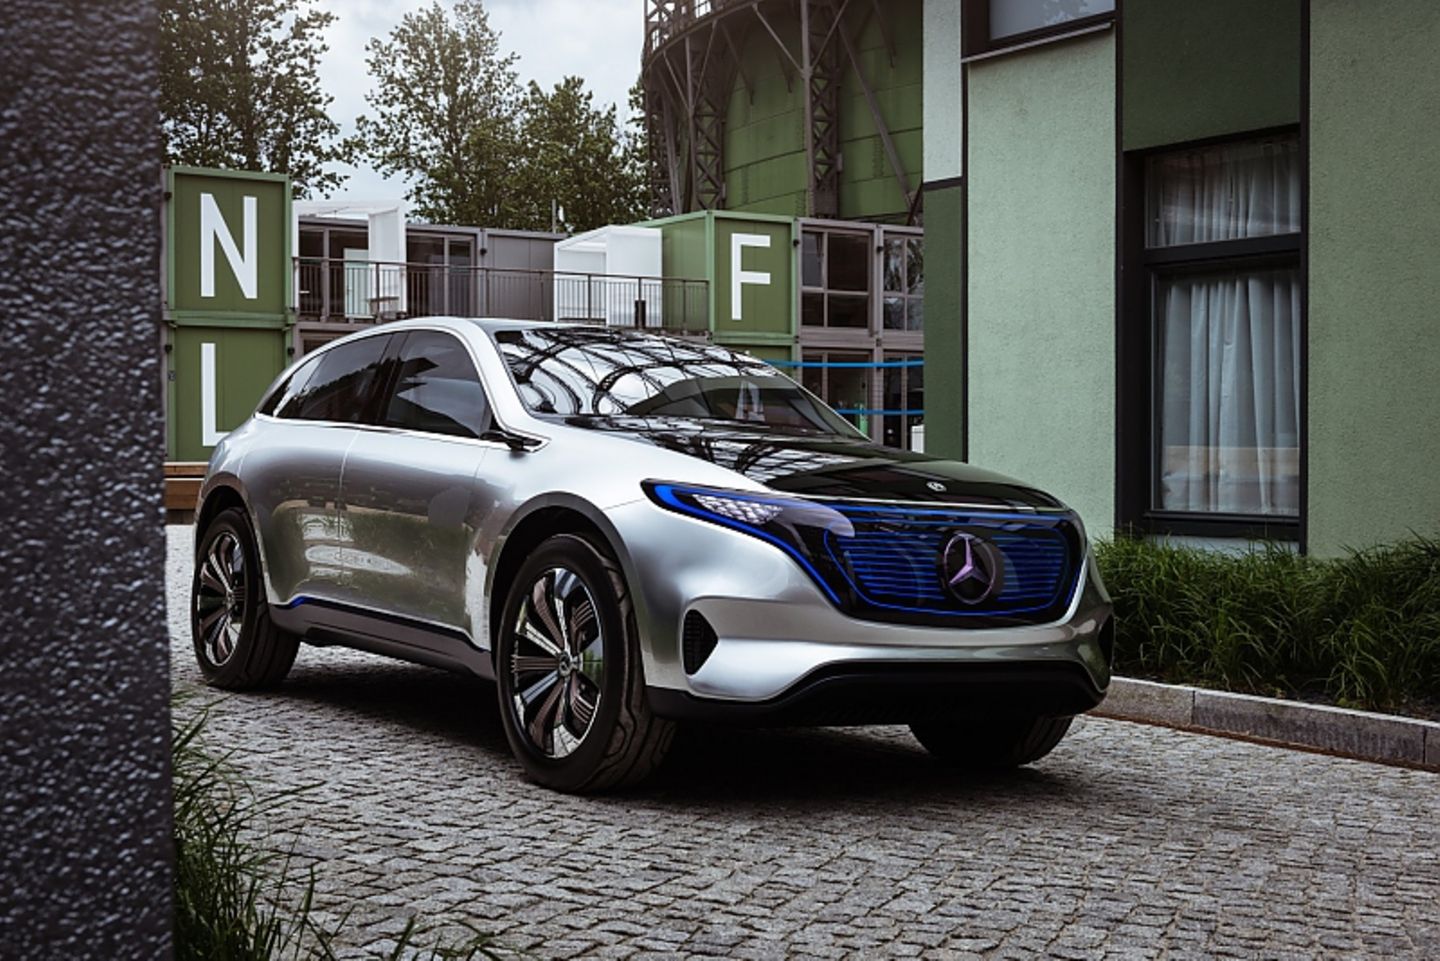 Mercedes Concept EQ